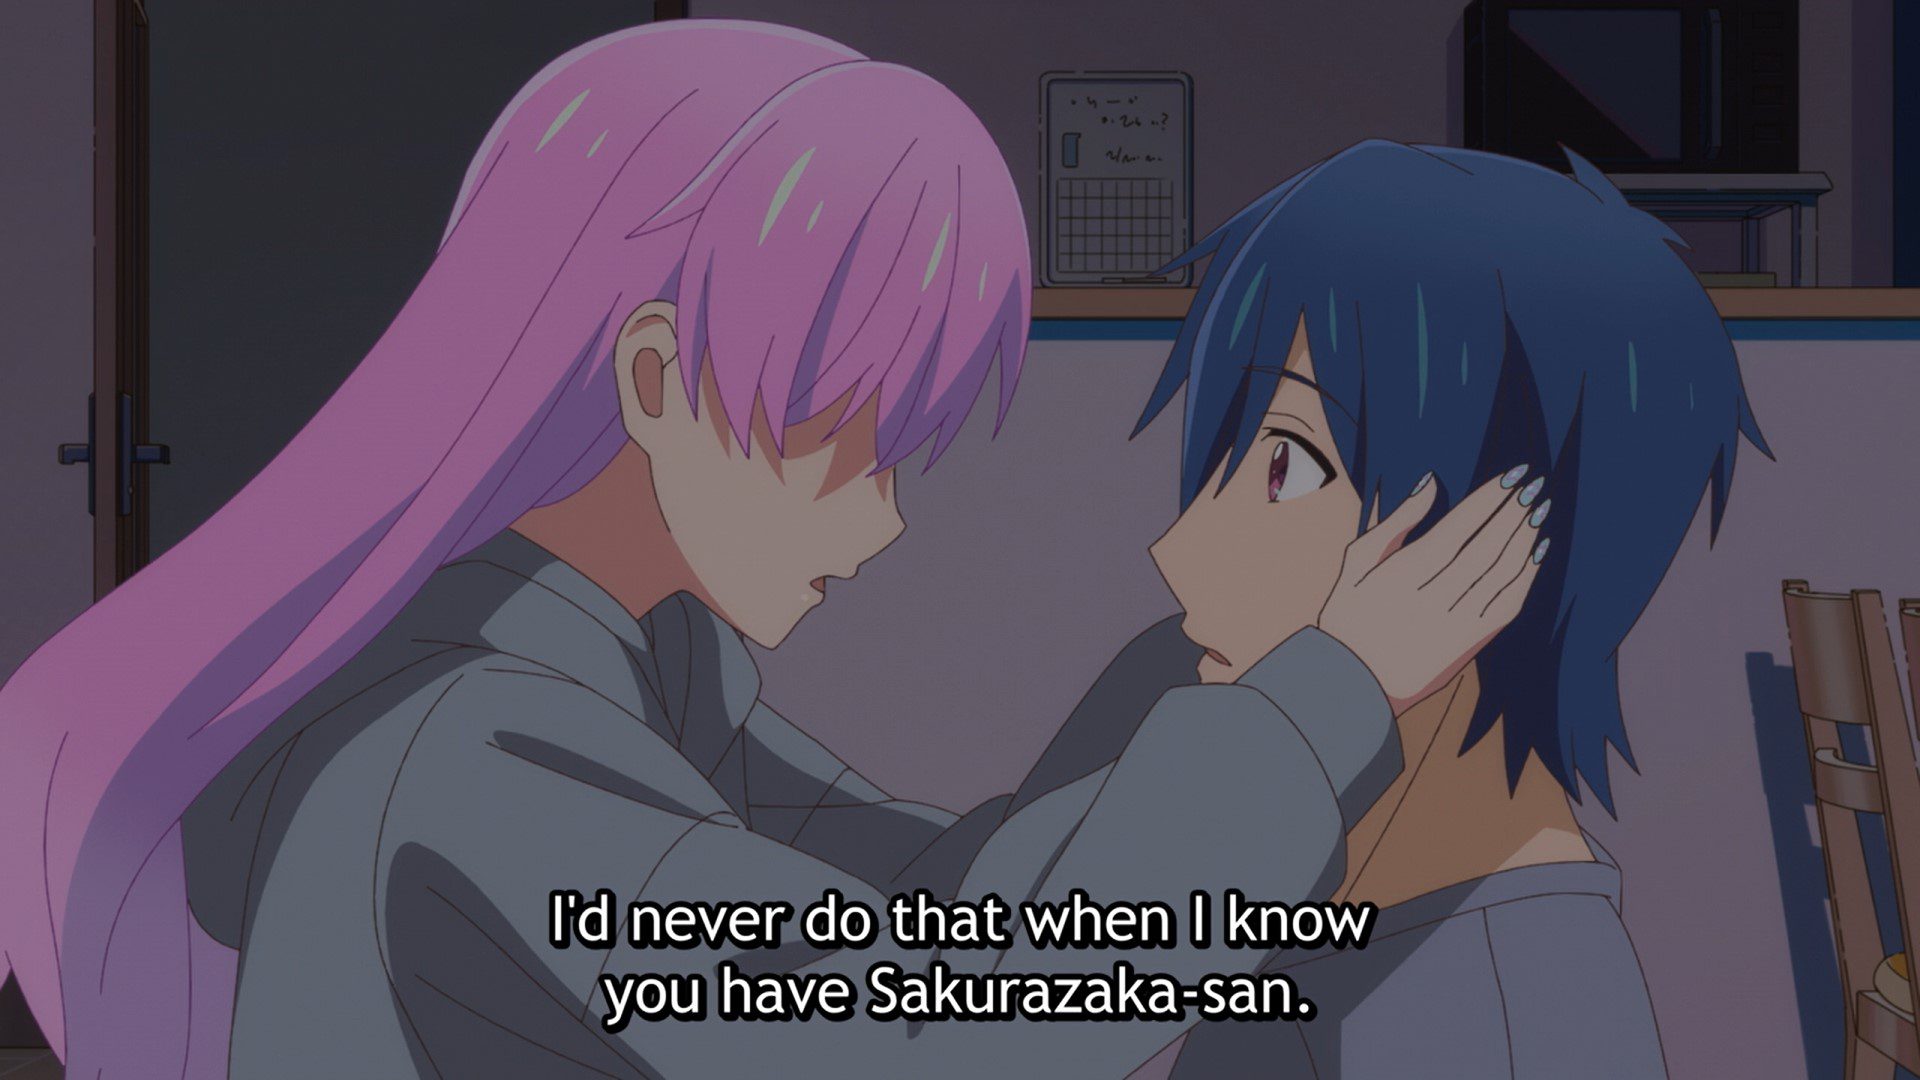 Más que una pareja casada, pero no amantes Episodio 7 Fecha de lanzamiento:  ¡Jirou y Shiori comparten su primer beso! - All Things Anime